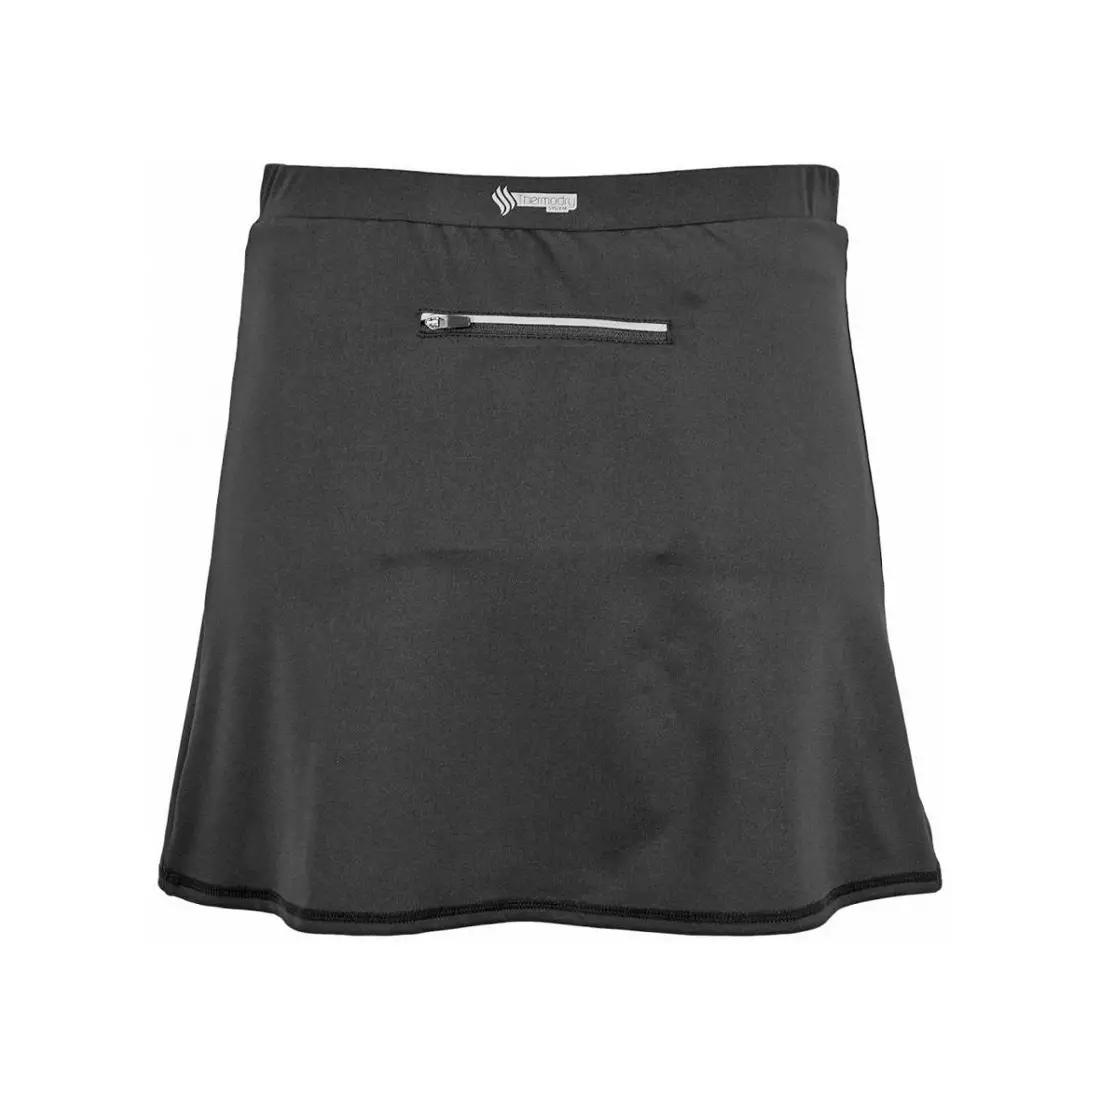 4F women's cycling skirt RSD003 - black